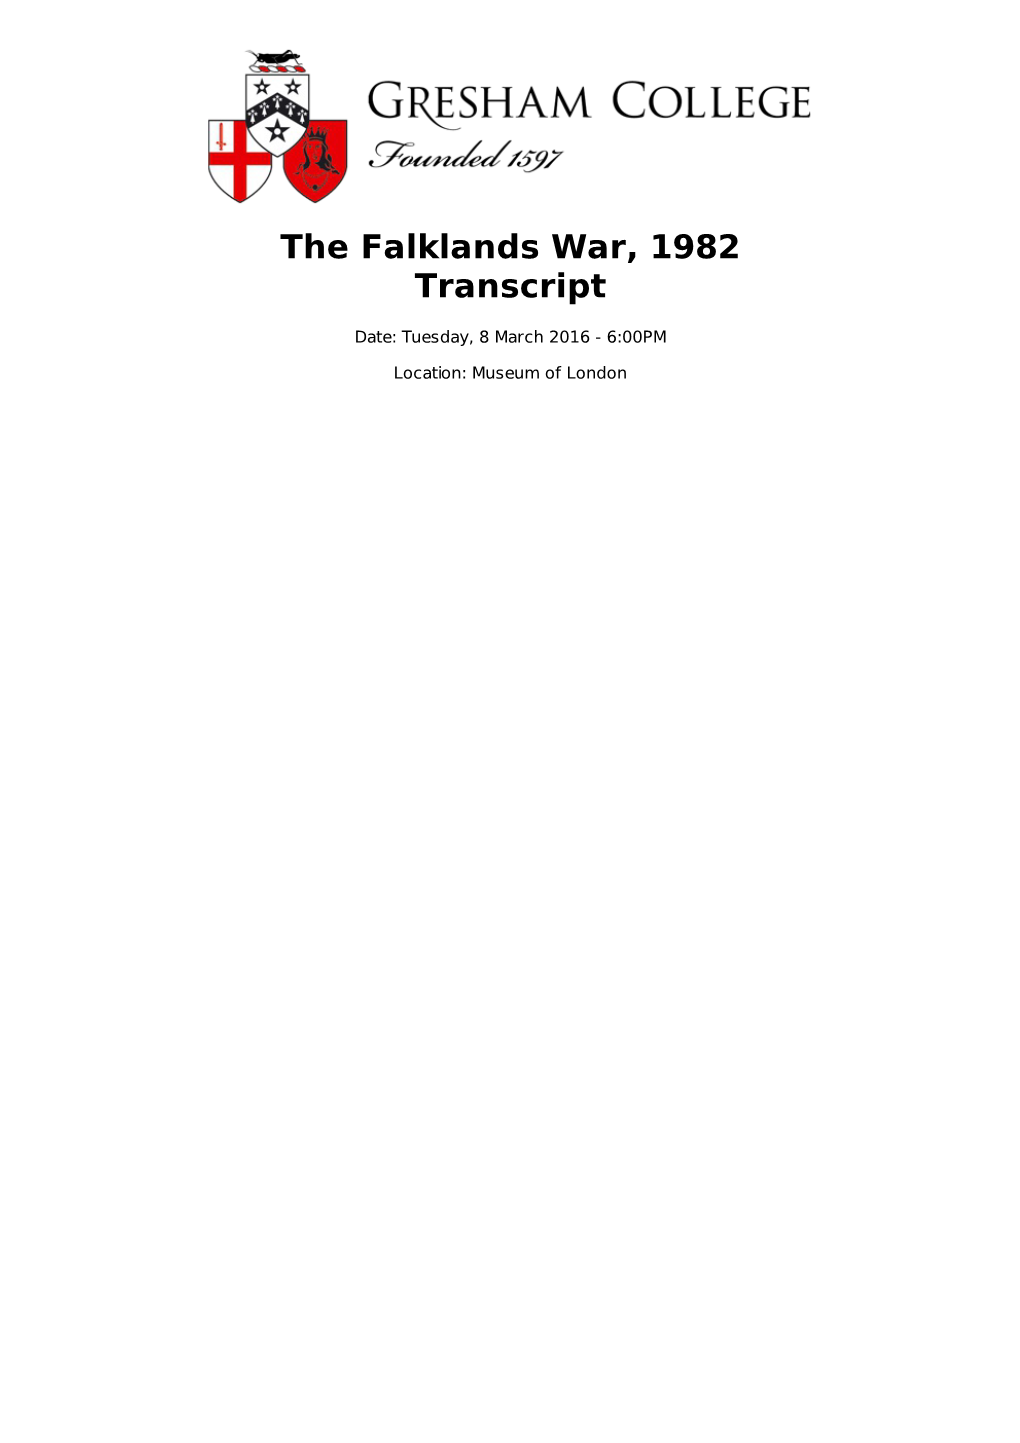 The Falklands War, 1982 Transcript